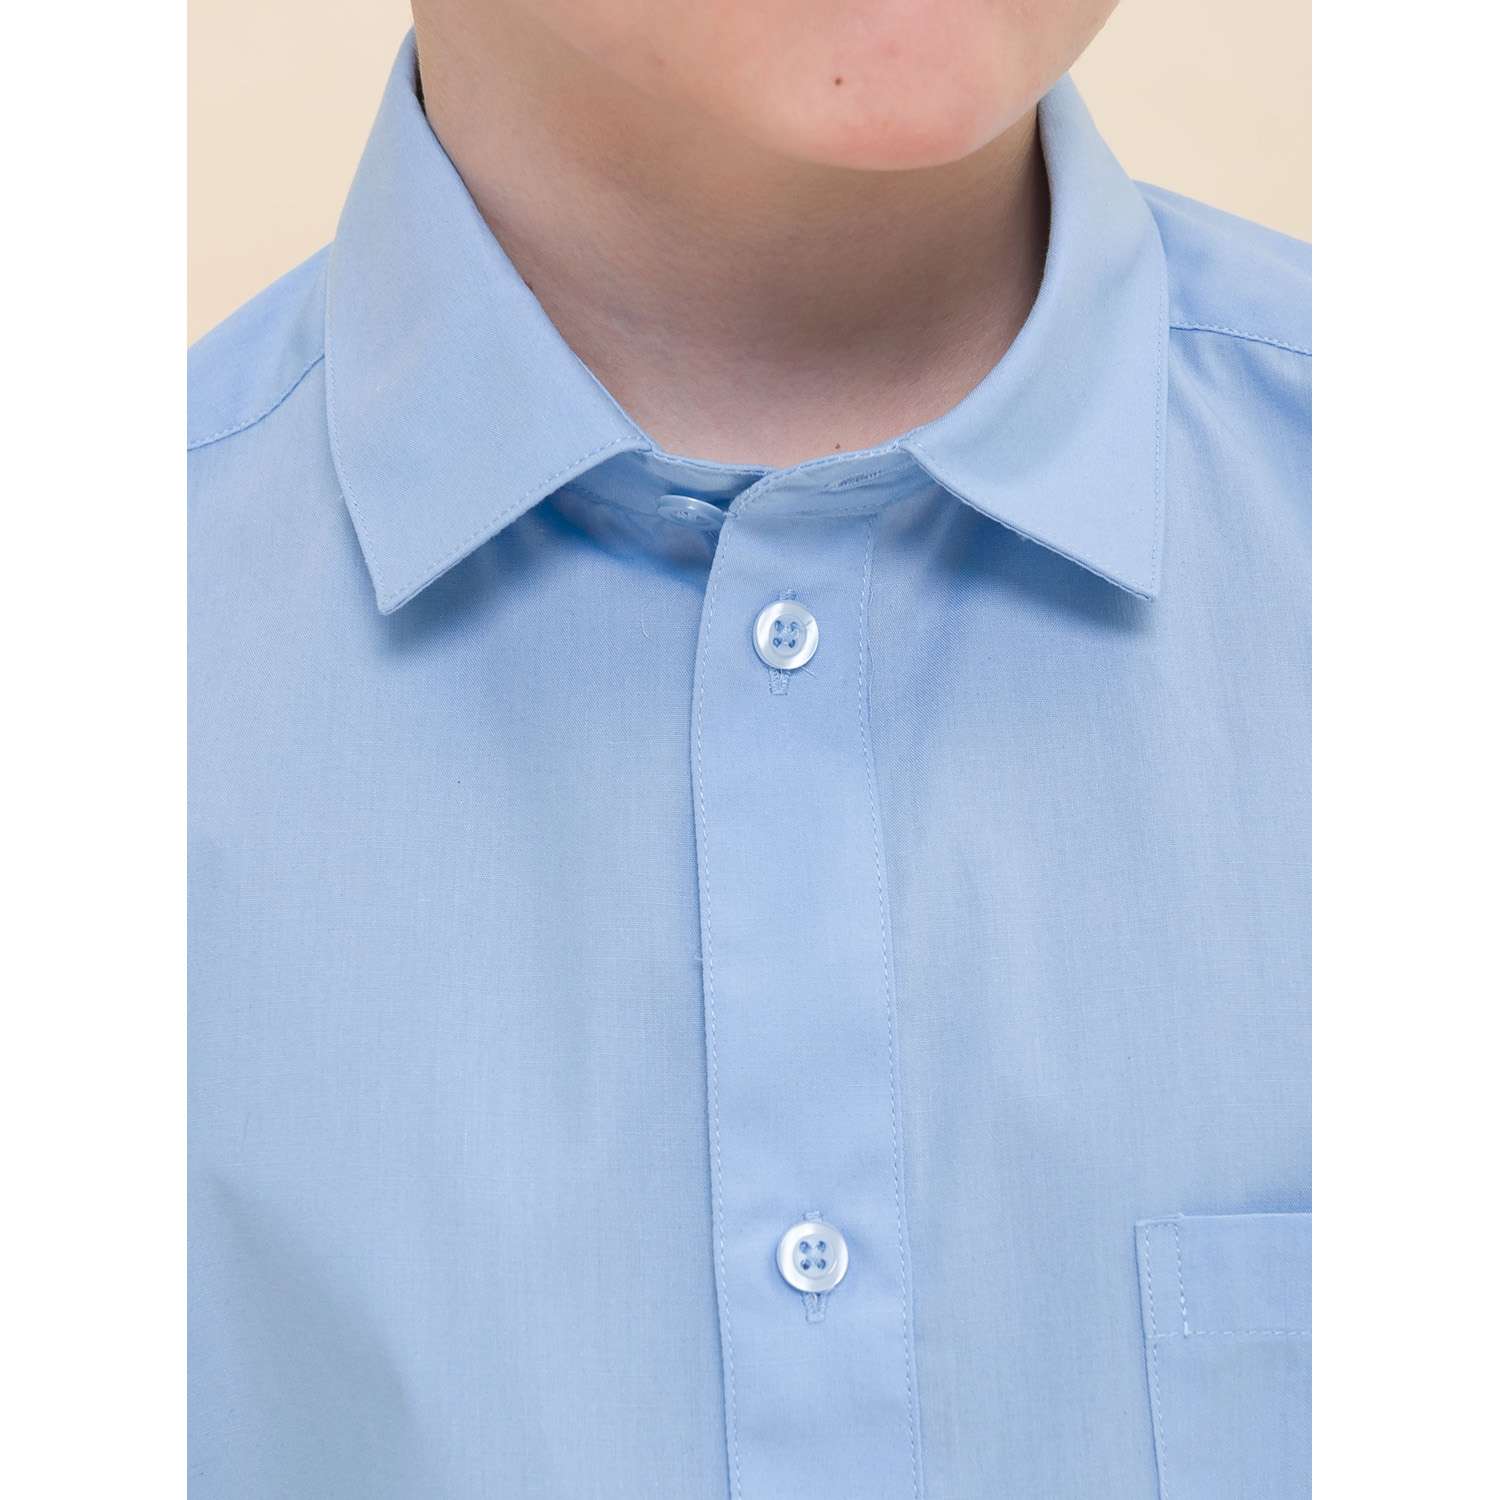 Рубашка PELICAN BWCJ8046/Голубой(9) - фото 4